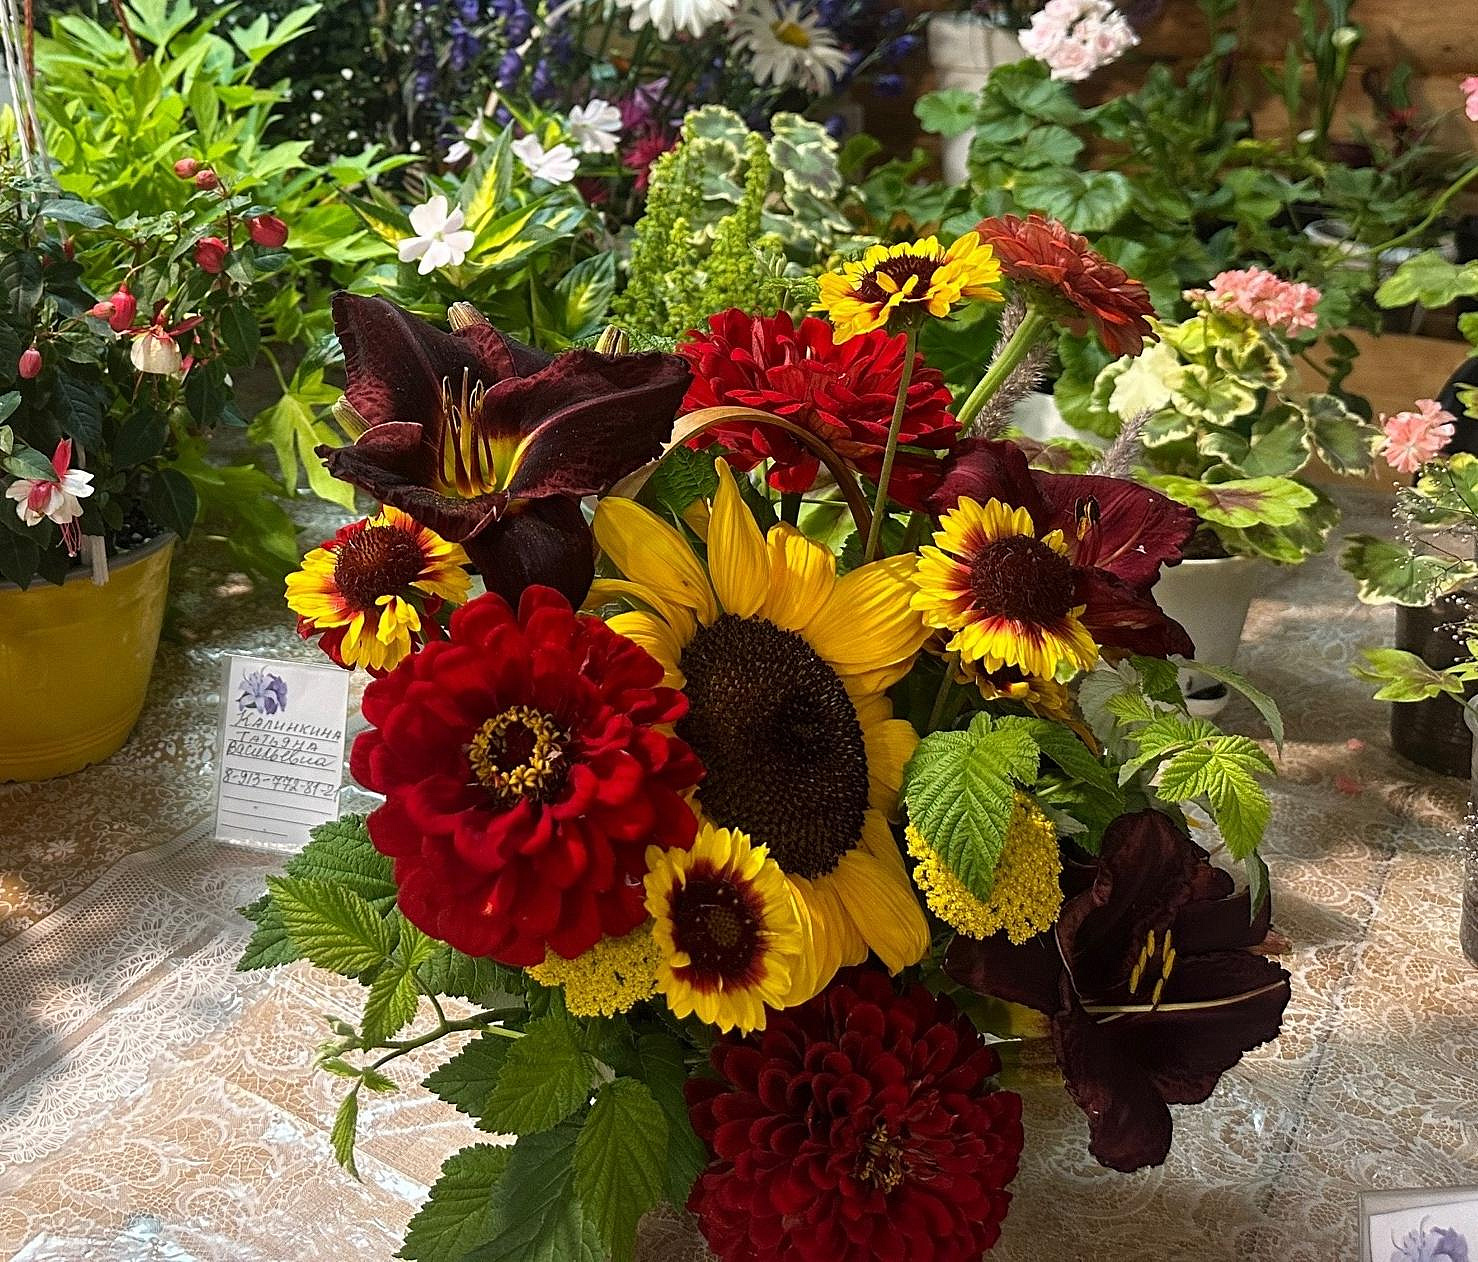 Буйство флоксов и лилий: цветы июля выставили в «Дачной академии»